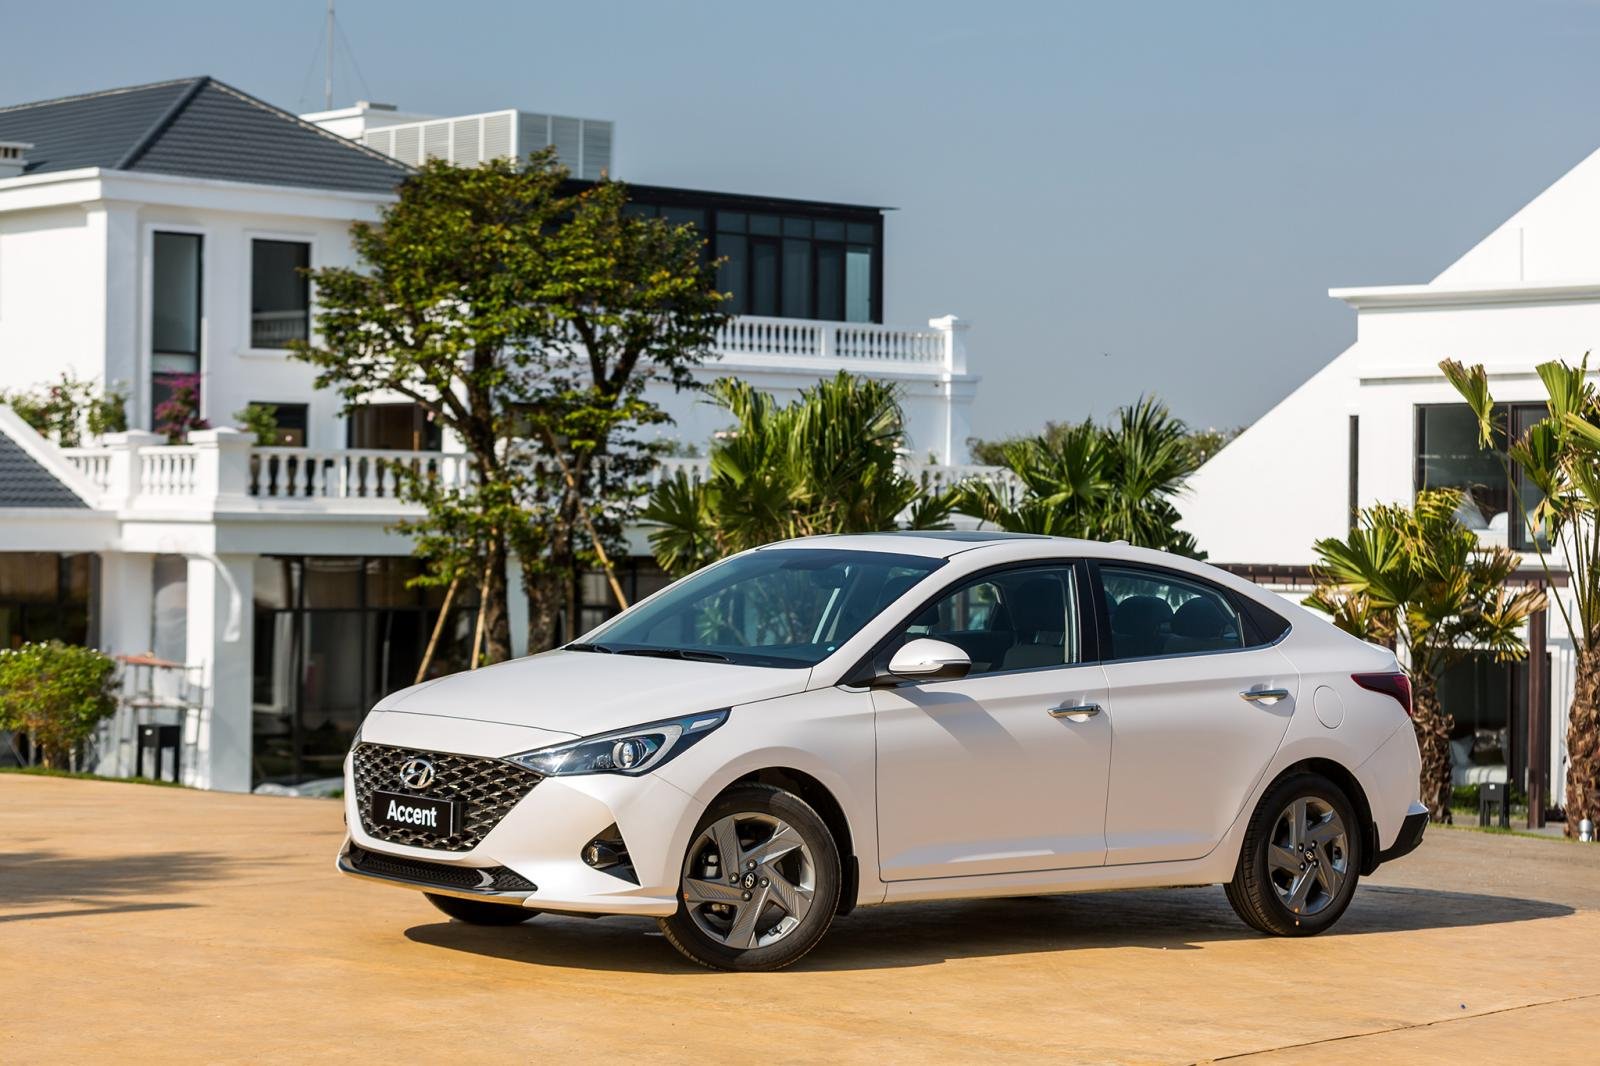 Hyundai Accent gây dấu ấn bởi ngoại hình bắt mắt